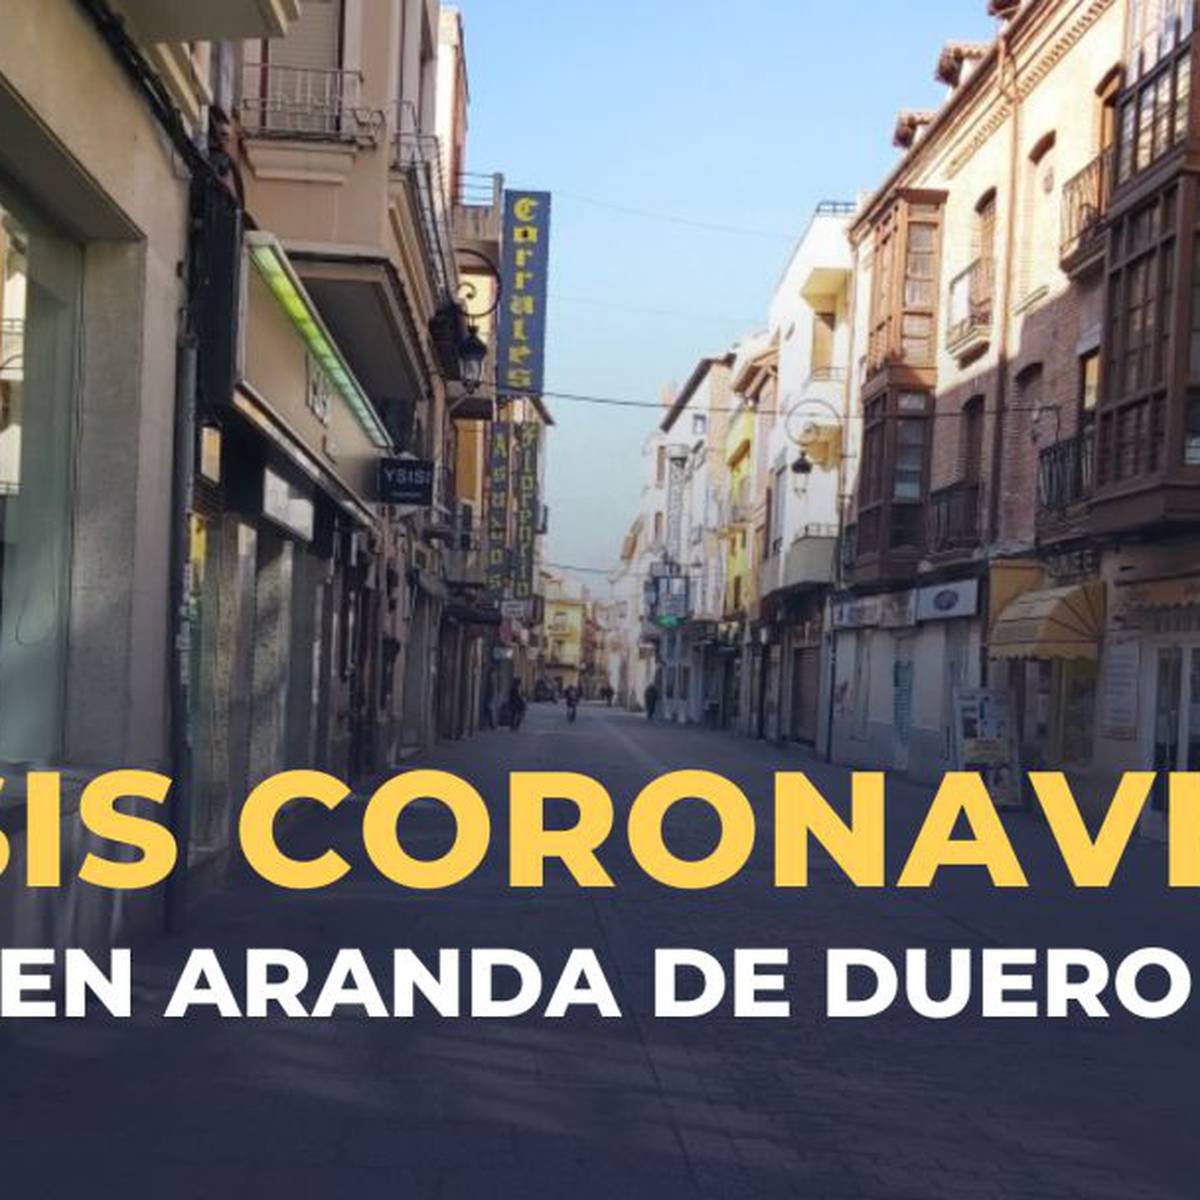 Aranda presenta la peor situación epidemiológica de las mayores poblaciones de Castilla y León | Actualidad | Cadena